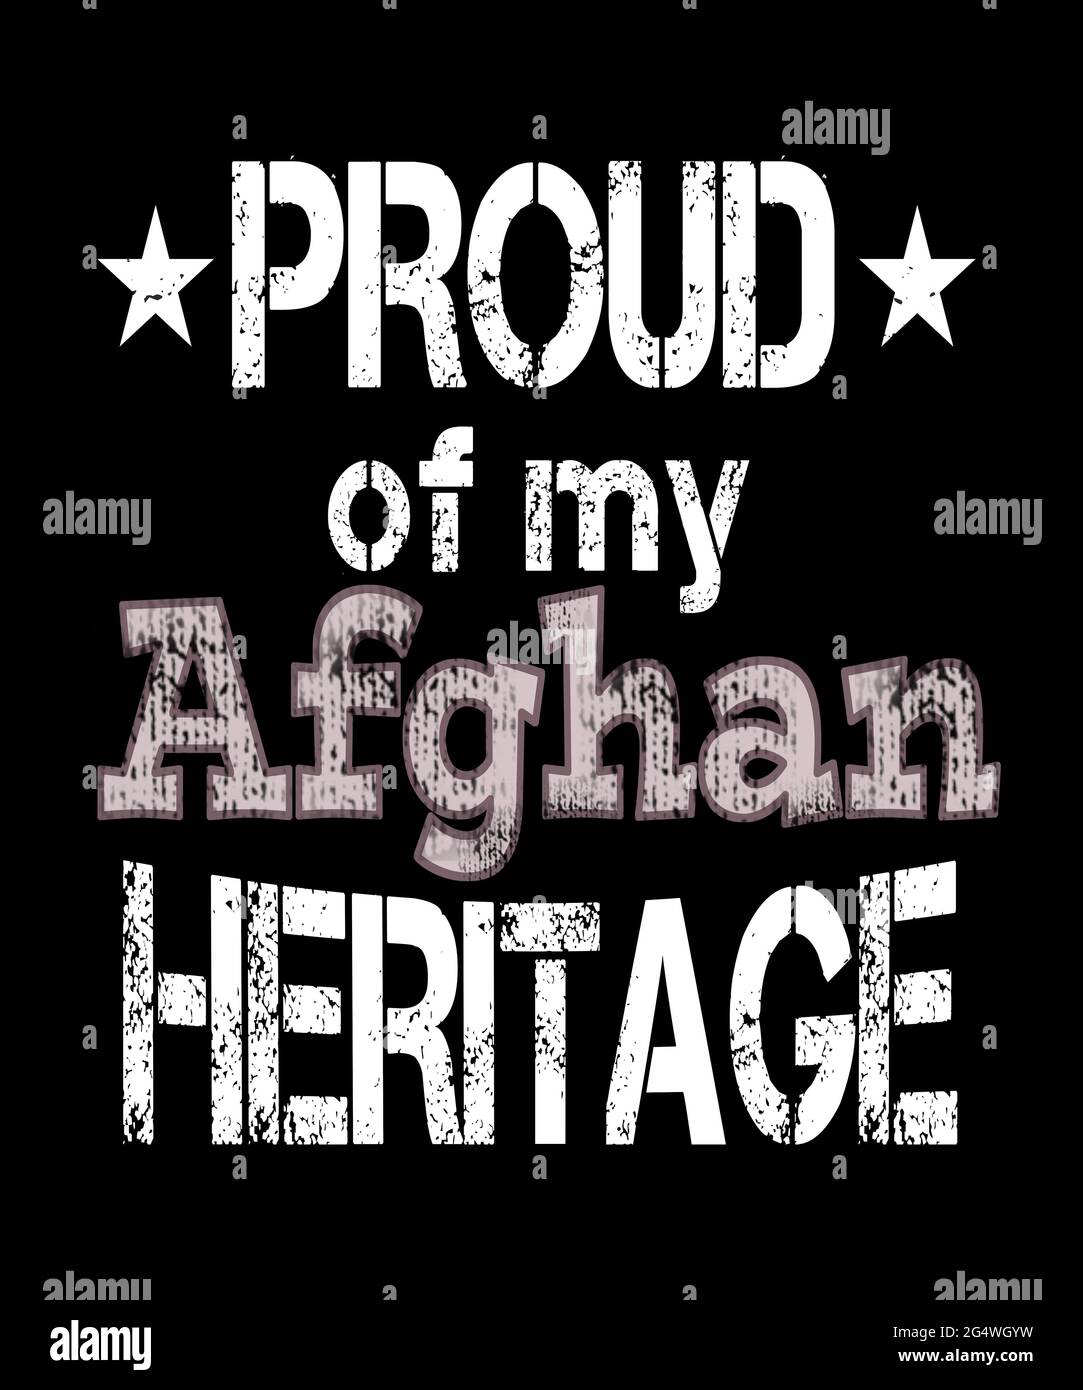 Stolz auf mein afghanisches Erbe in einer grunge grafischen Illustration für Menschen, die Wurzeln oder Kultur Afghanistans haben. Stockfoto